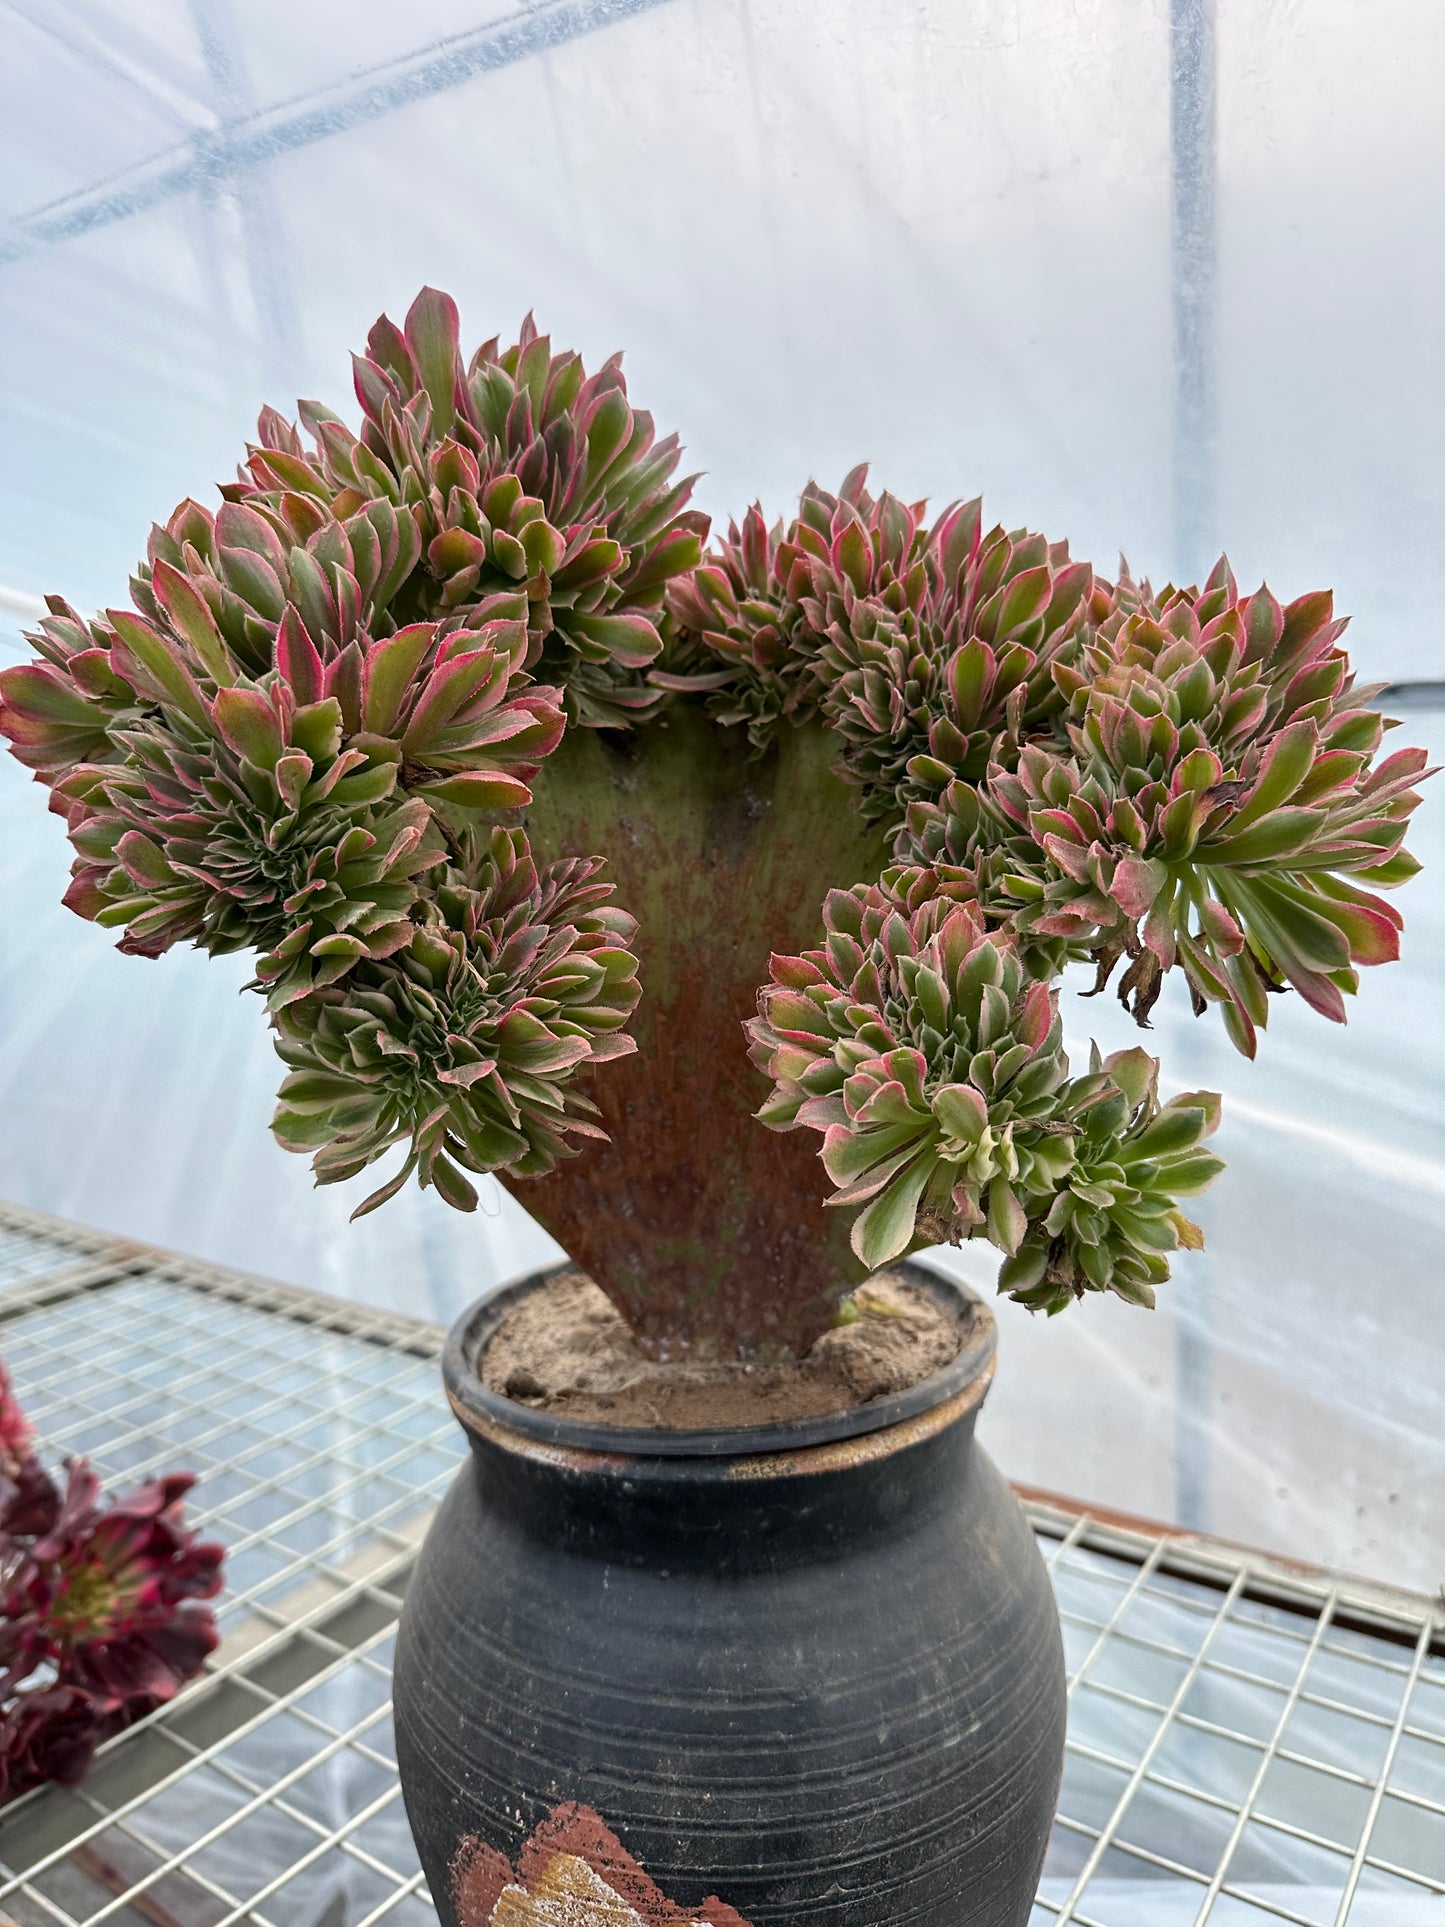 Rosa Hexen-Zugbank mit Haube, 35 cm, hat Wurzeln/Aeonium Affix/Bunte natürliche lebende Pflanzen, Sukkulenten/Nr. 3